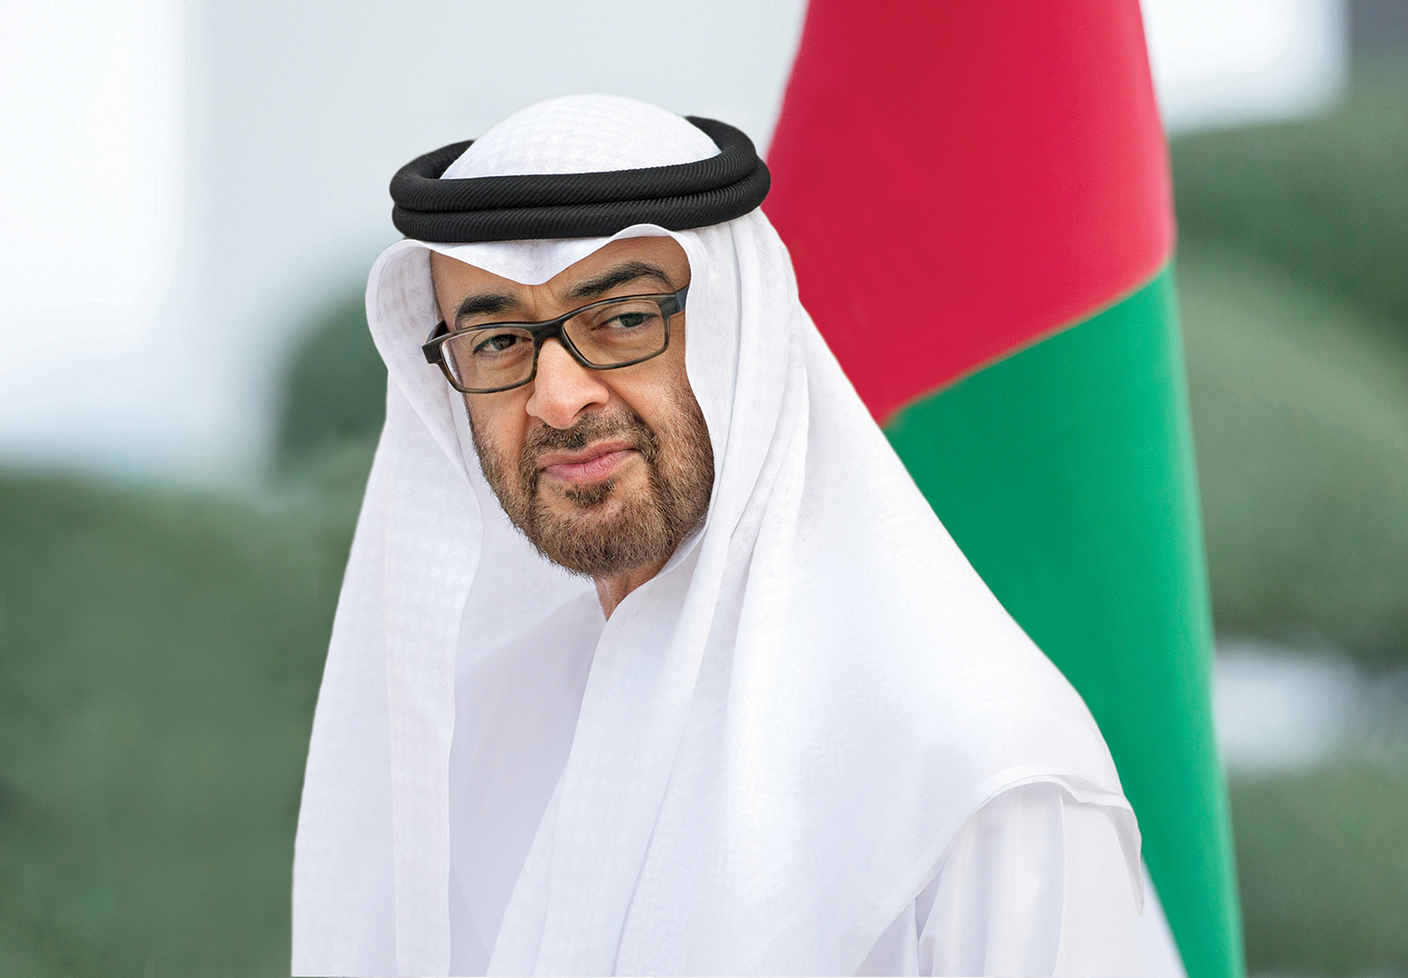 الشيخ محمد بن زايد آل نهيان، رئيس الامارات العربية المتحدة (وام)